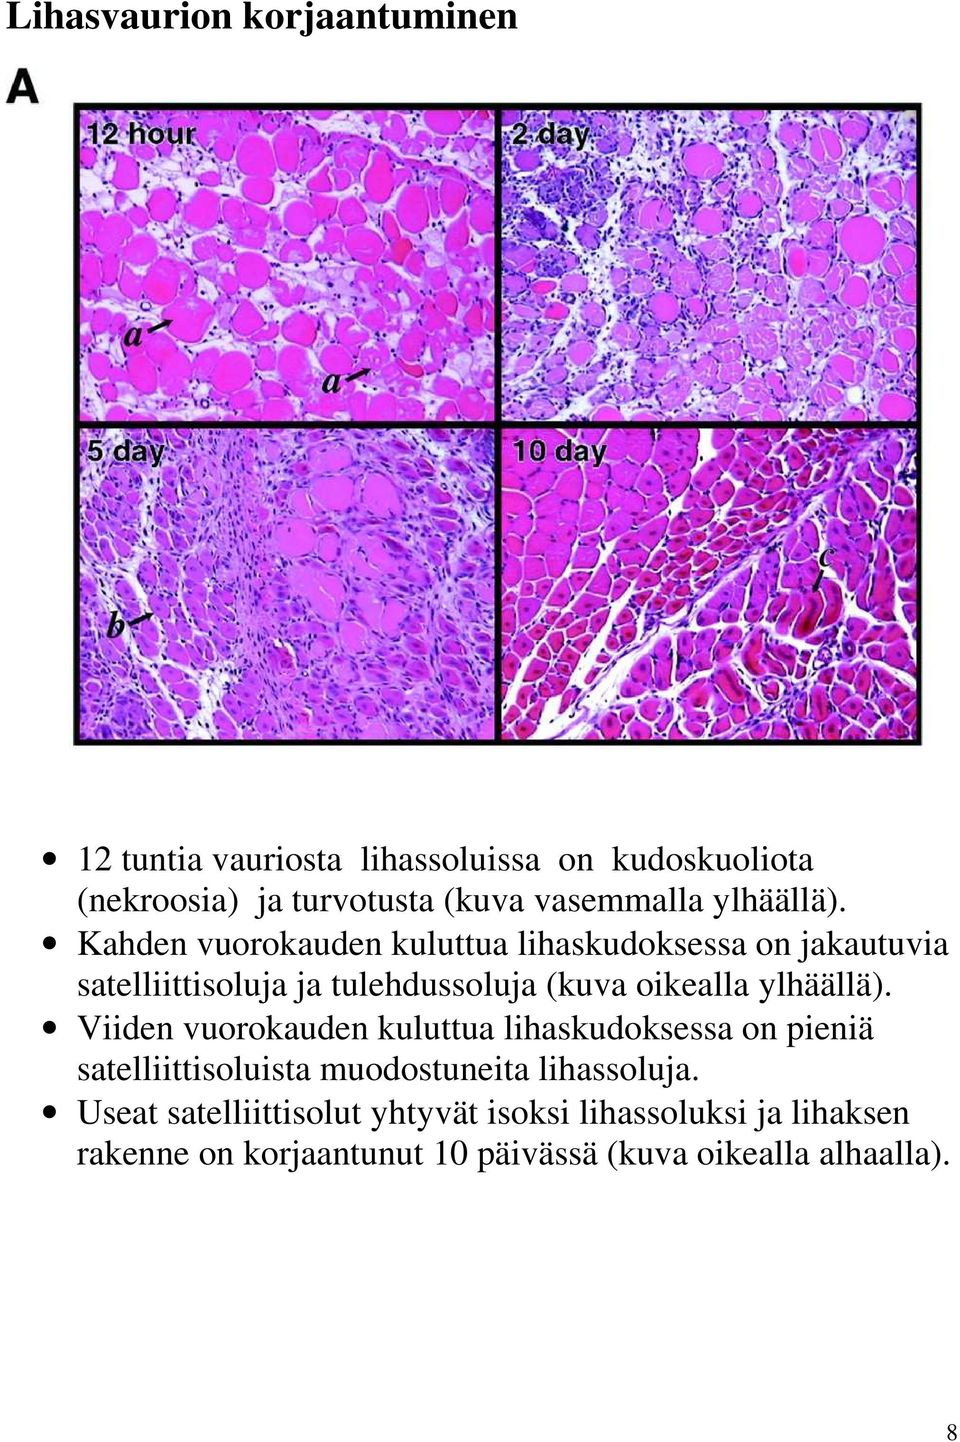 Kahden vuorokauden kuluttua lihaskudoksessa on jakautuvia satelliittisoluja ja tulehdussoluja (kuva oikealla ylhäällä).